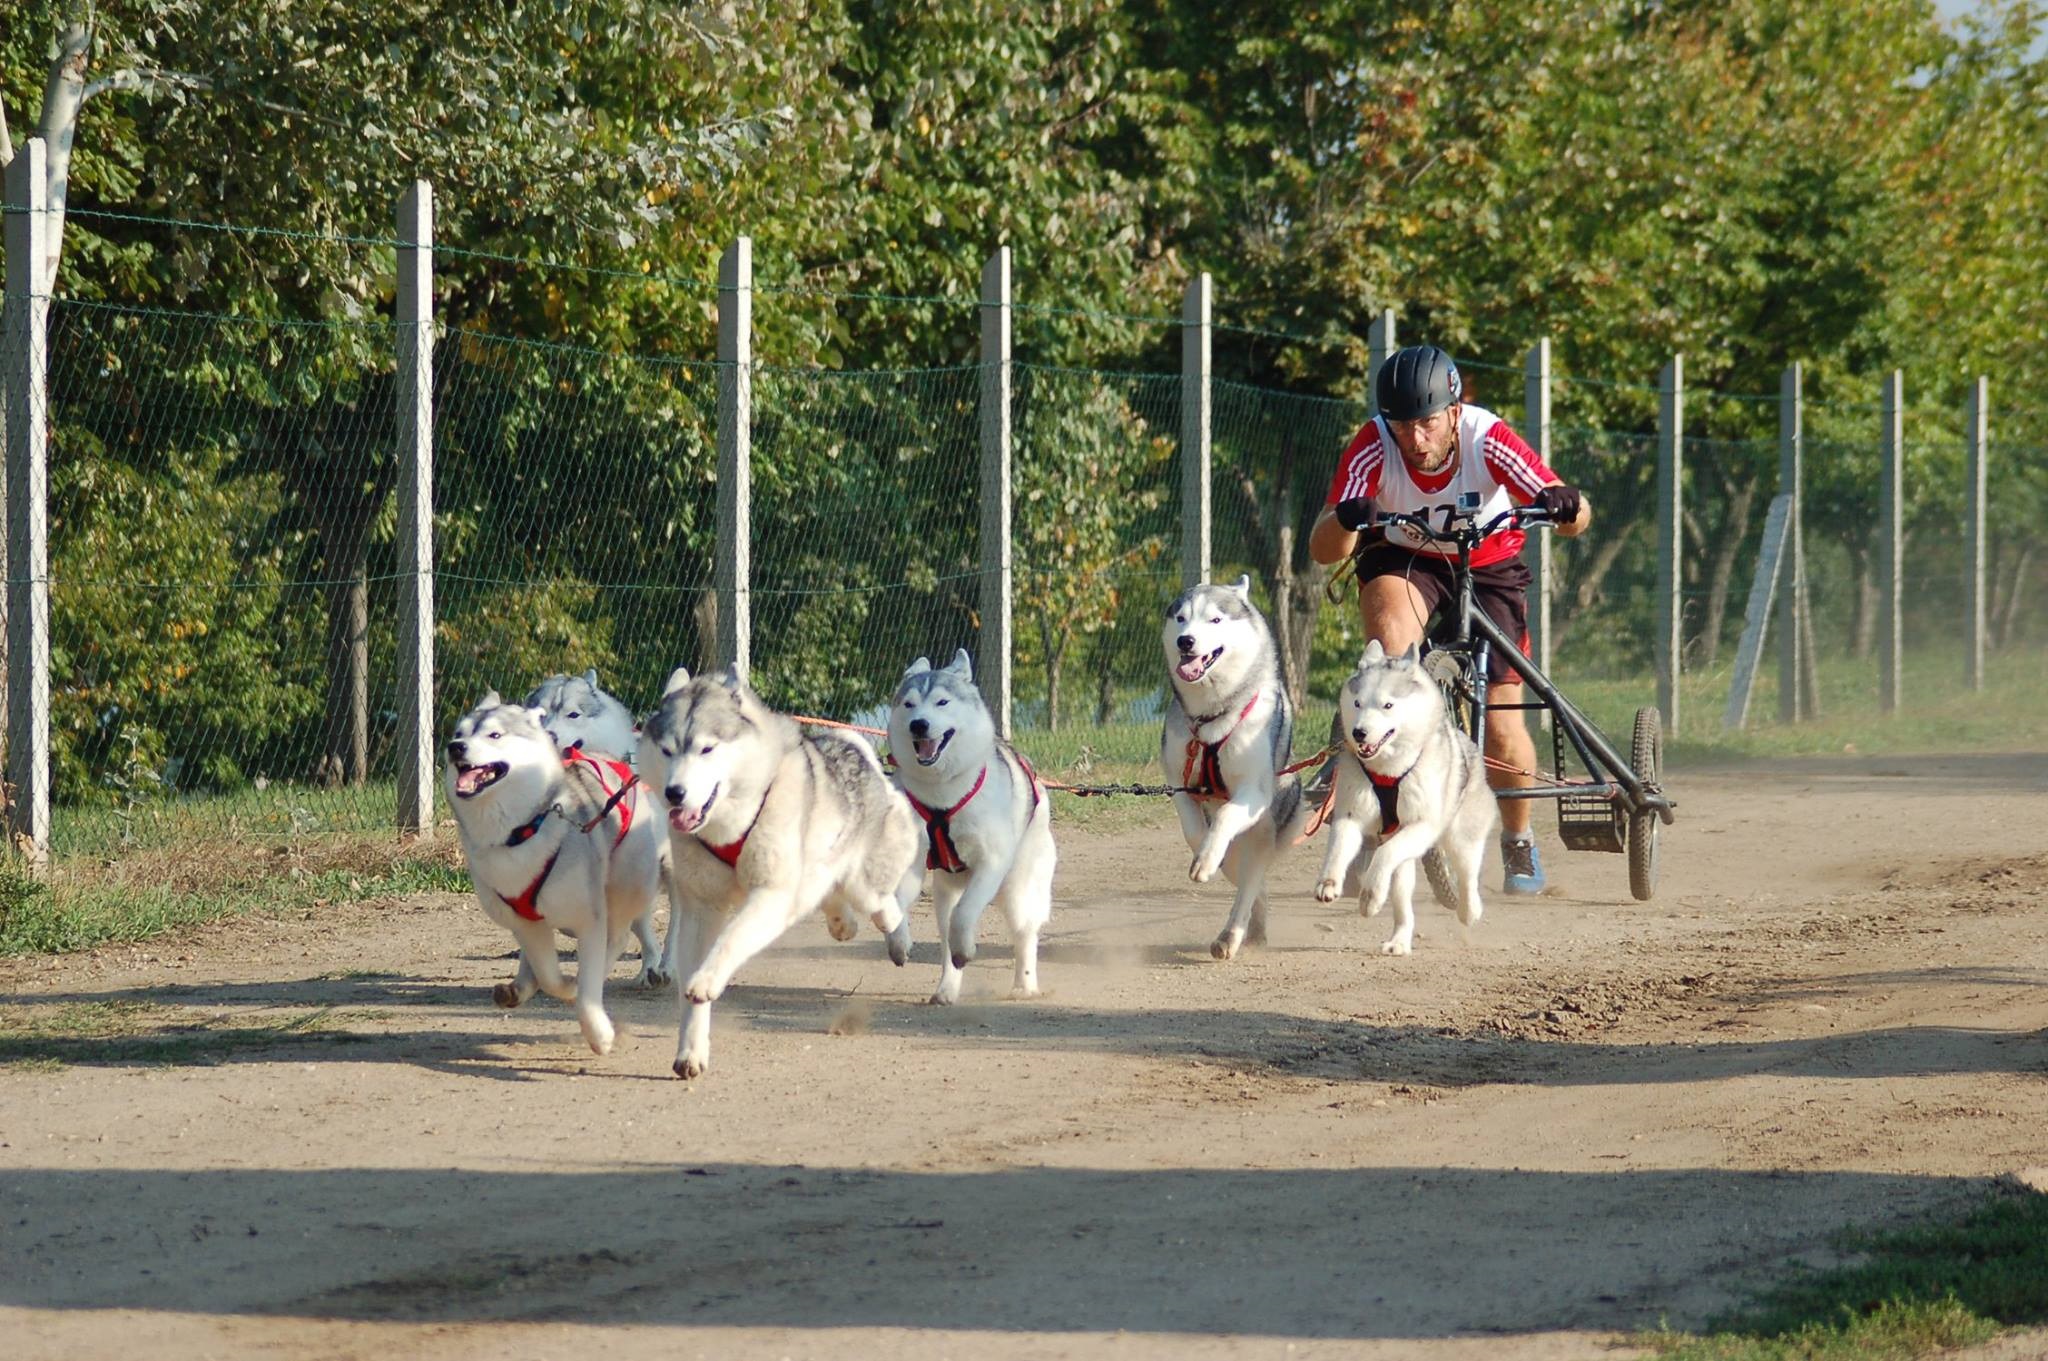 Родословни сибирски хъскита и техните стопани печелят медали за България от международни спортни състезания за впрегатни кучета. Екипите от рунтави шампиони и водачите им, които се наричат мъшери, спорят в люта битка с конкуренти от цяла Европа и успяват да извоюват престижни места за страната ни в екзотичните дисциплини като байкджориг, каникрос и скутер с кучета.